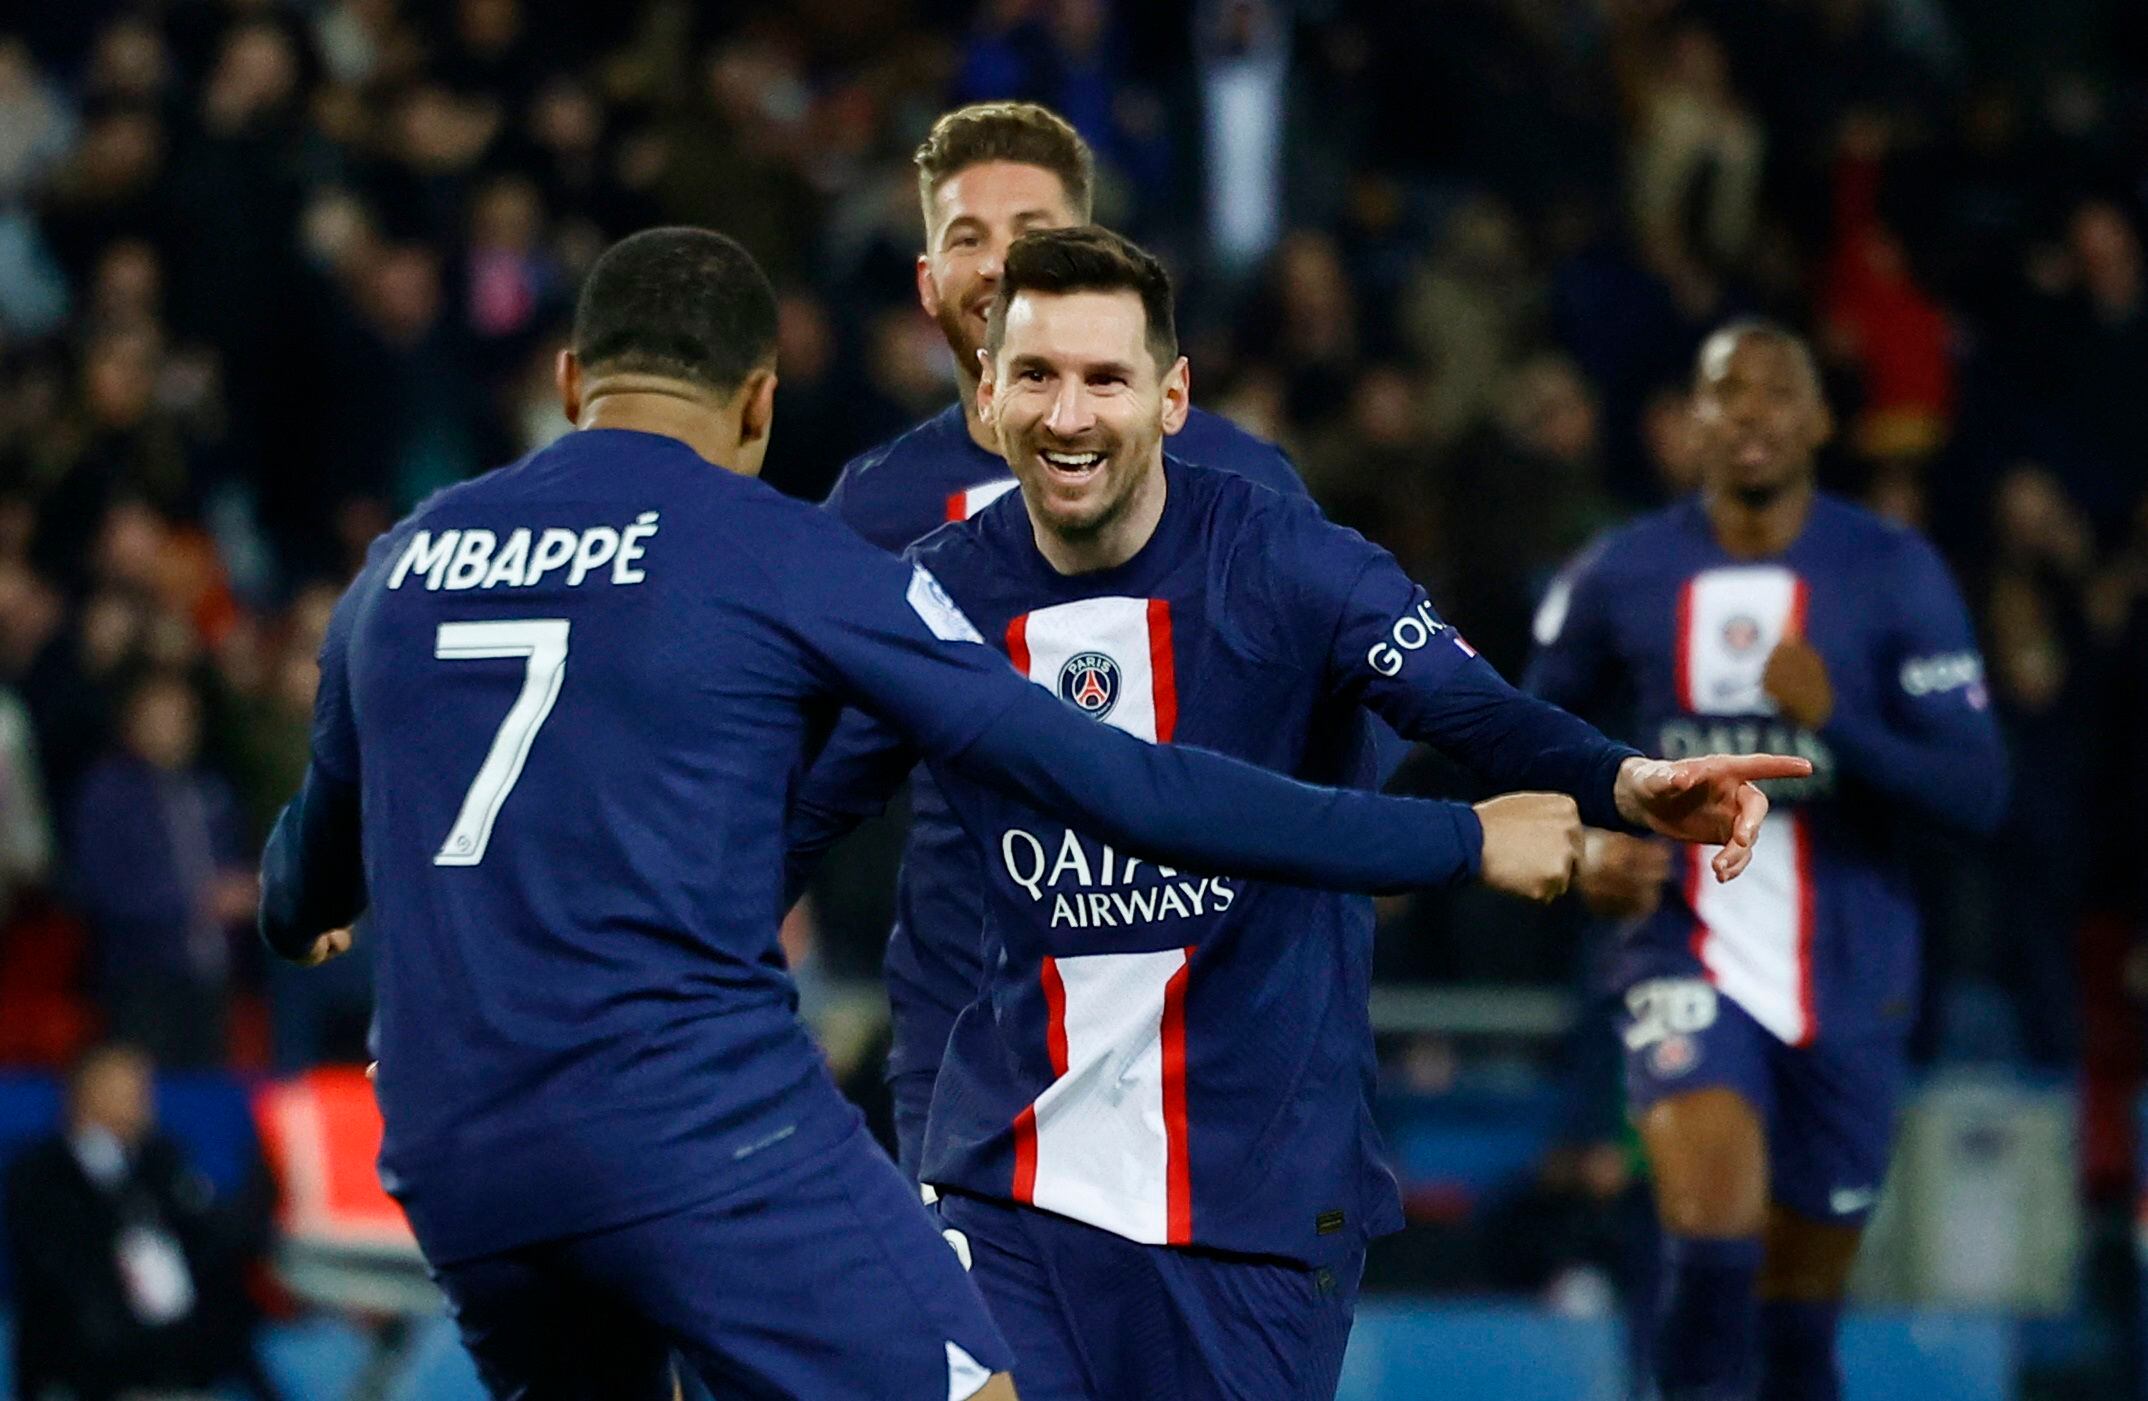 Mbappé y Messi se encuentran en su mejor momento de conexión y se refleja en el arco rival (Foto: Reuters)